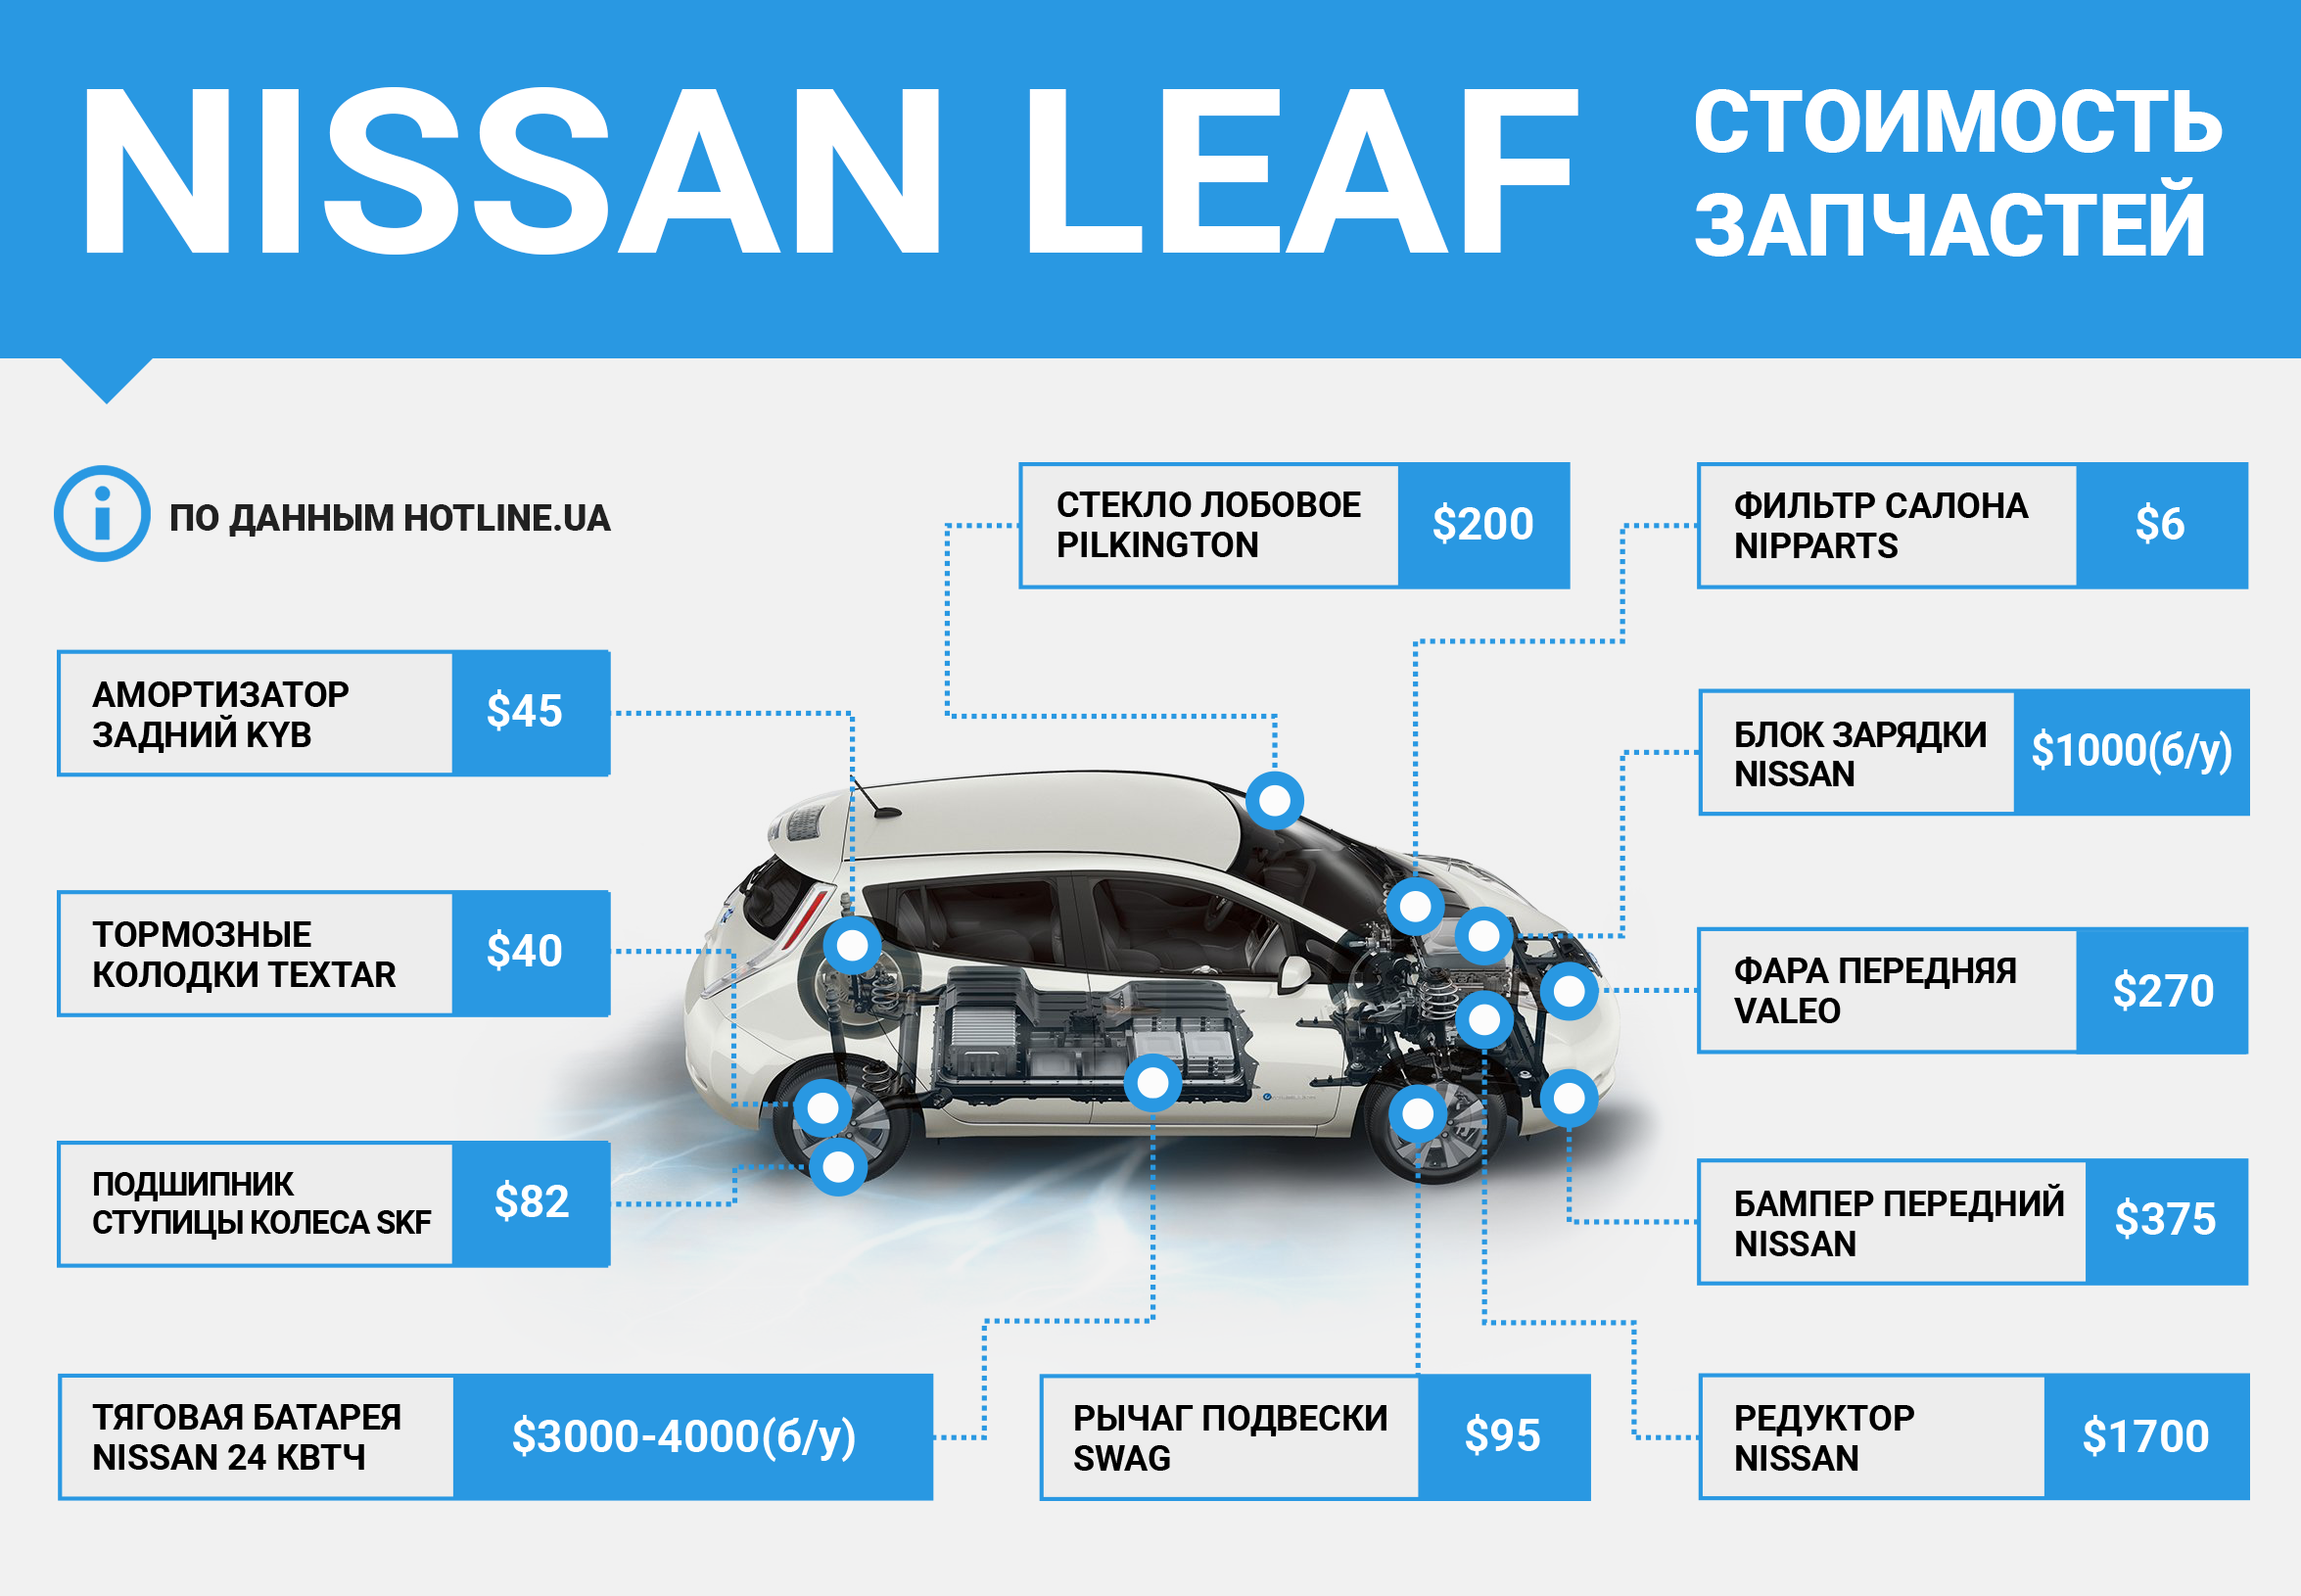 Nissan leaf - полный обзор - преимущества и недостатки